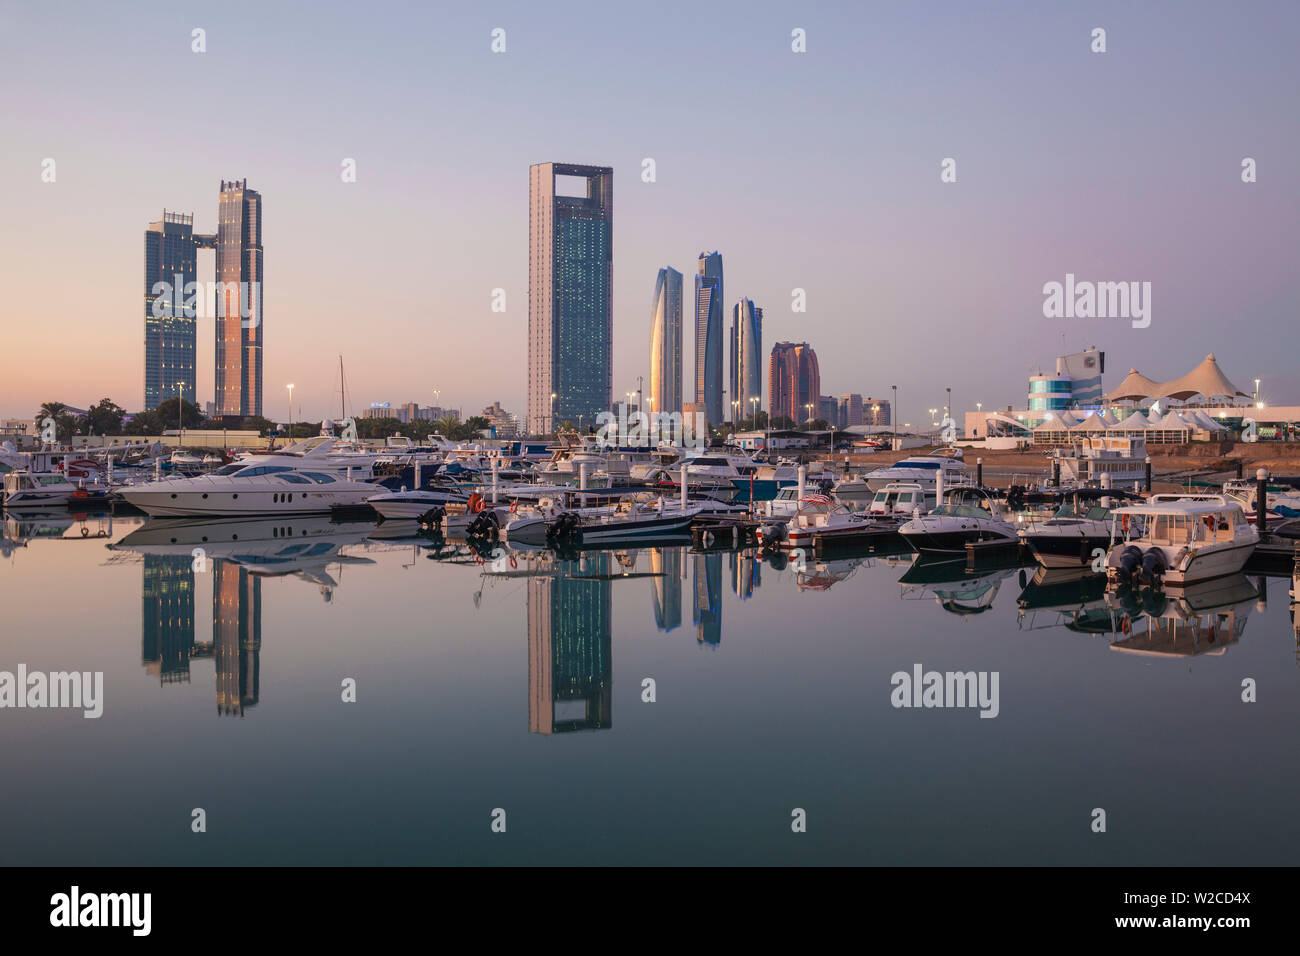 Die Vereinigten Arabischen Emirate, Abu Dhabi, Blick auf die Marina und die Skyline der Stadt in Richtung St. Regis Hotel, Abu Dhabi National Oil Company Headquarters, Etihad Towers, der Royal Rose Hotel suchen und rechts die Abu Dhabi International Marine Sports Club Stockfoto